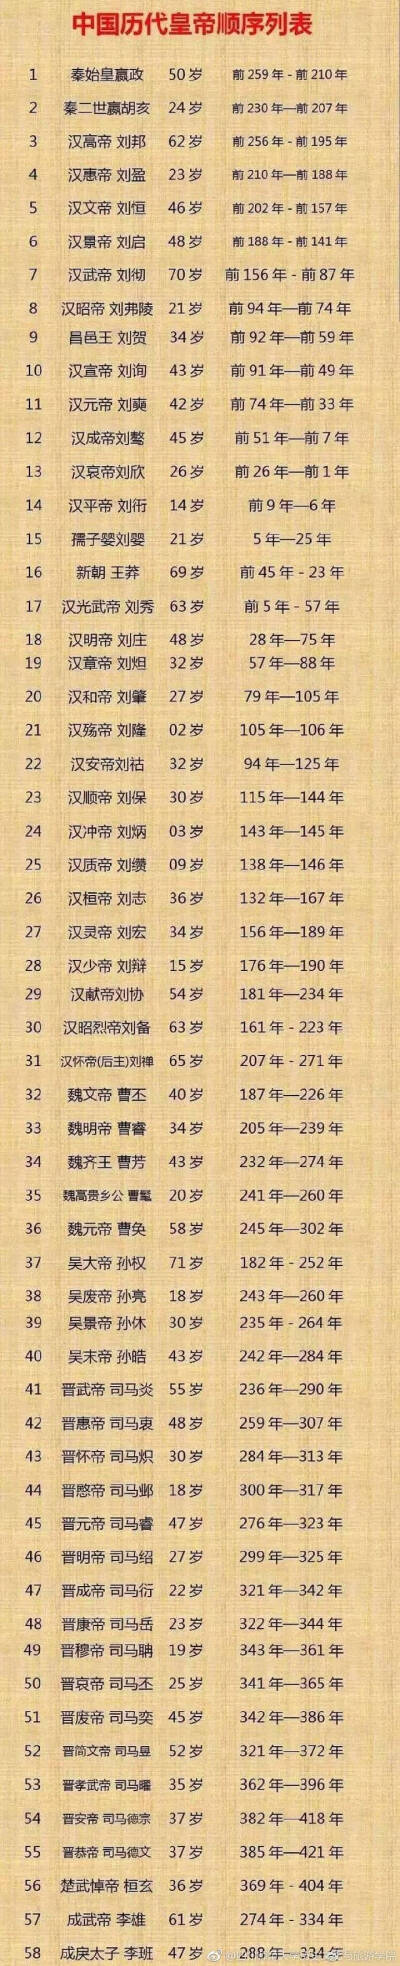 中国422个皇帝顺序朝代图片